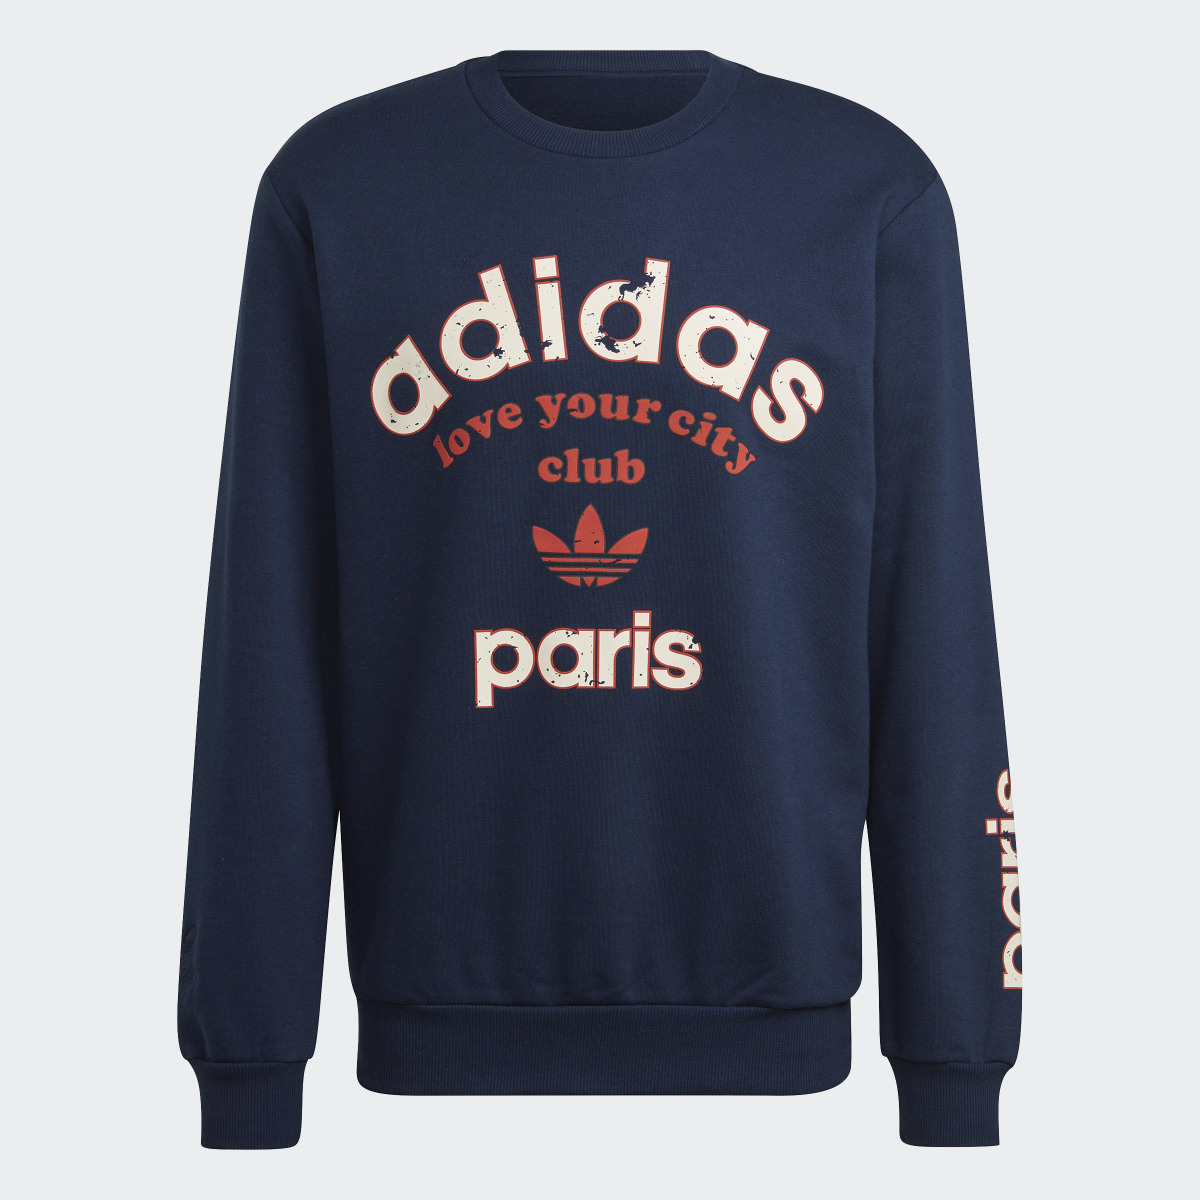 Adidas Paris Collegiate City Crew Sweatshirt. 4